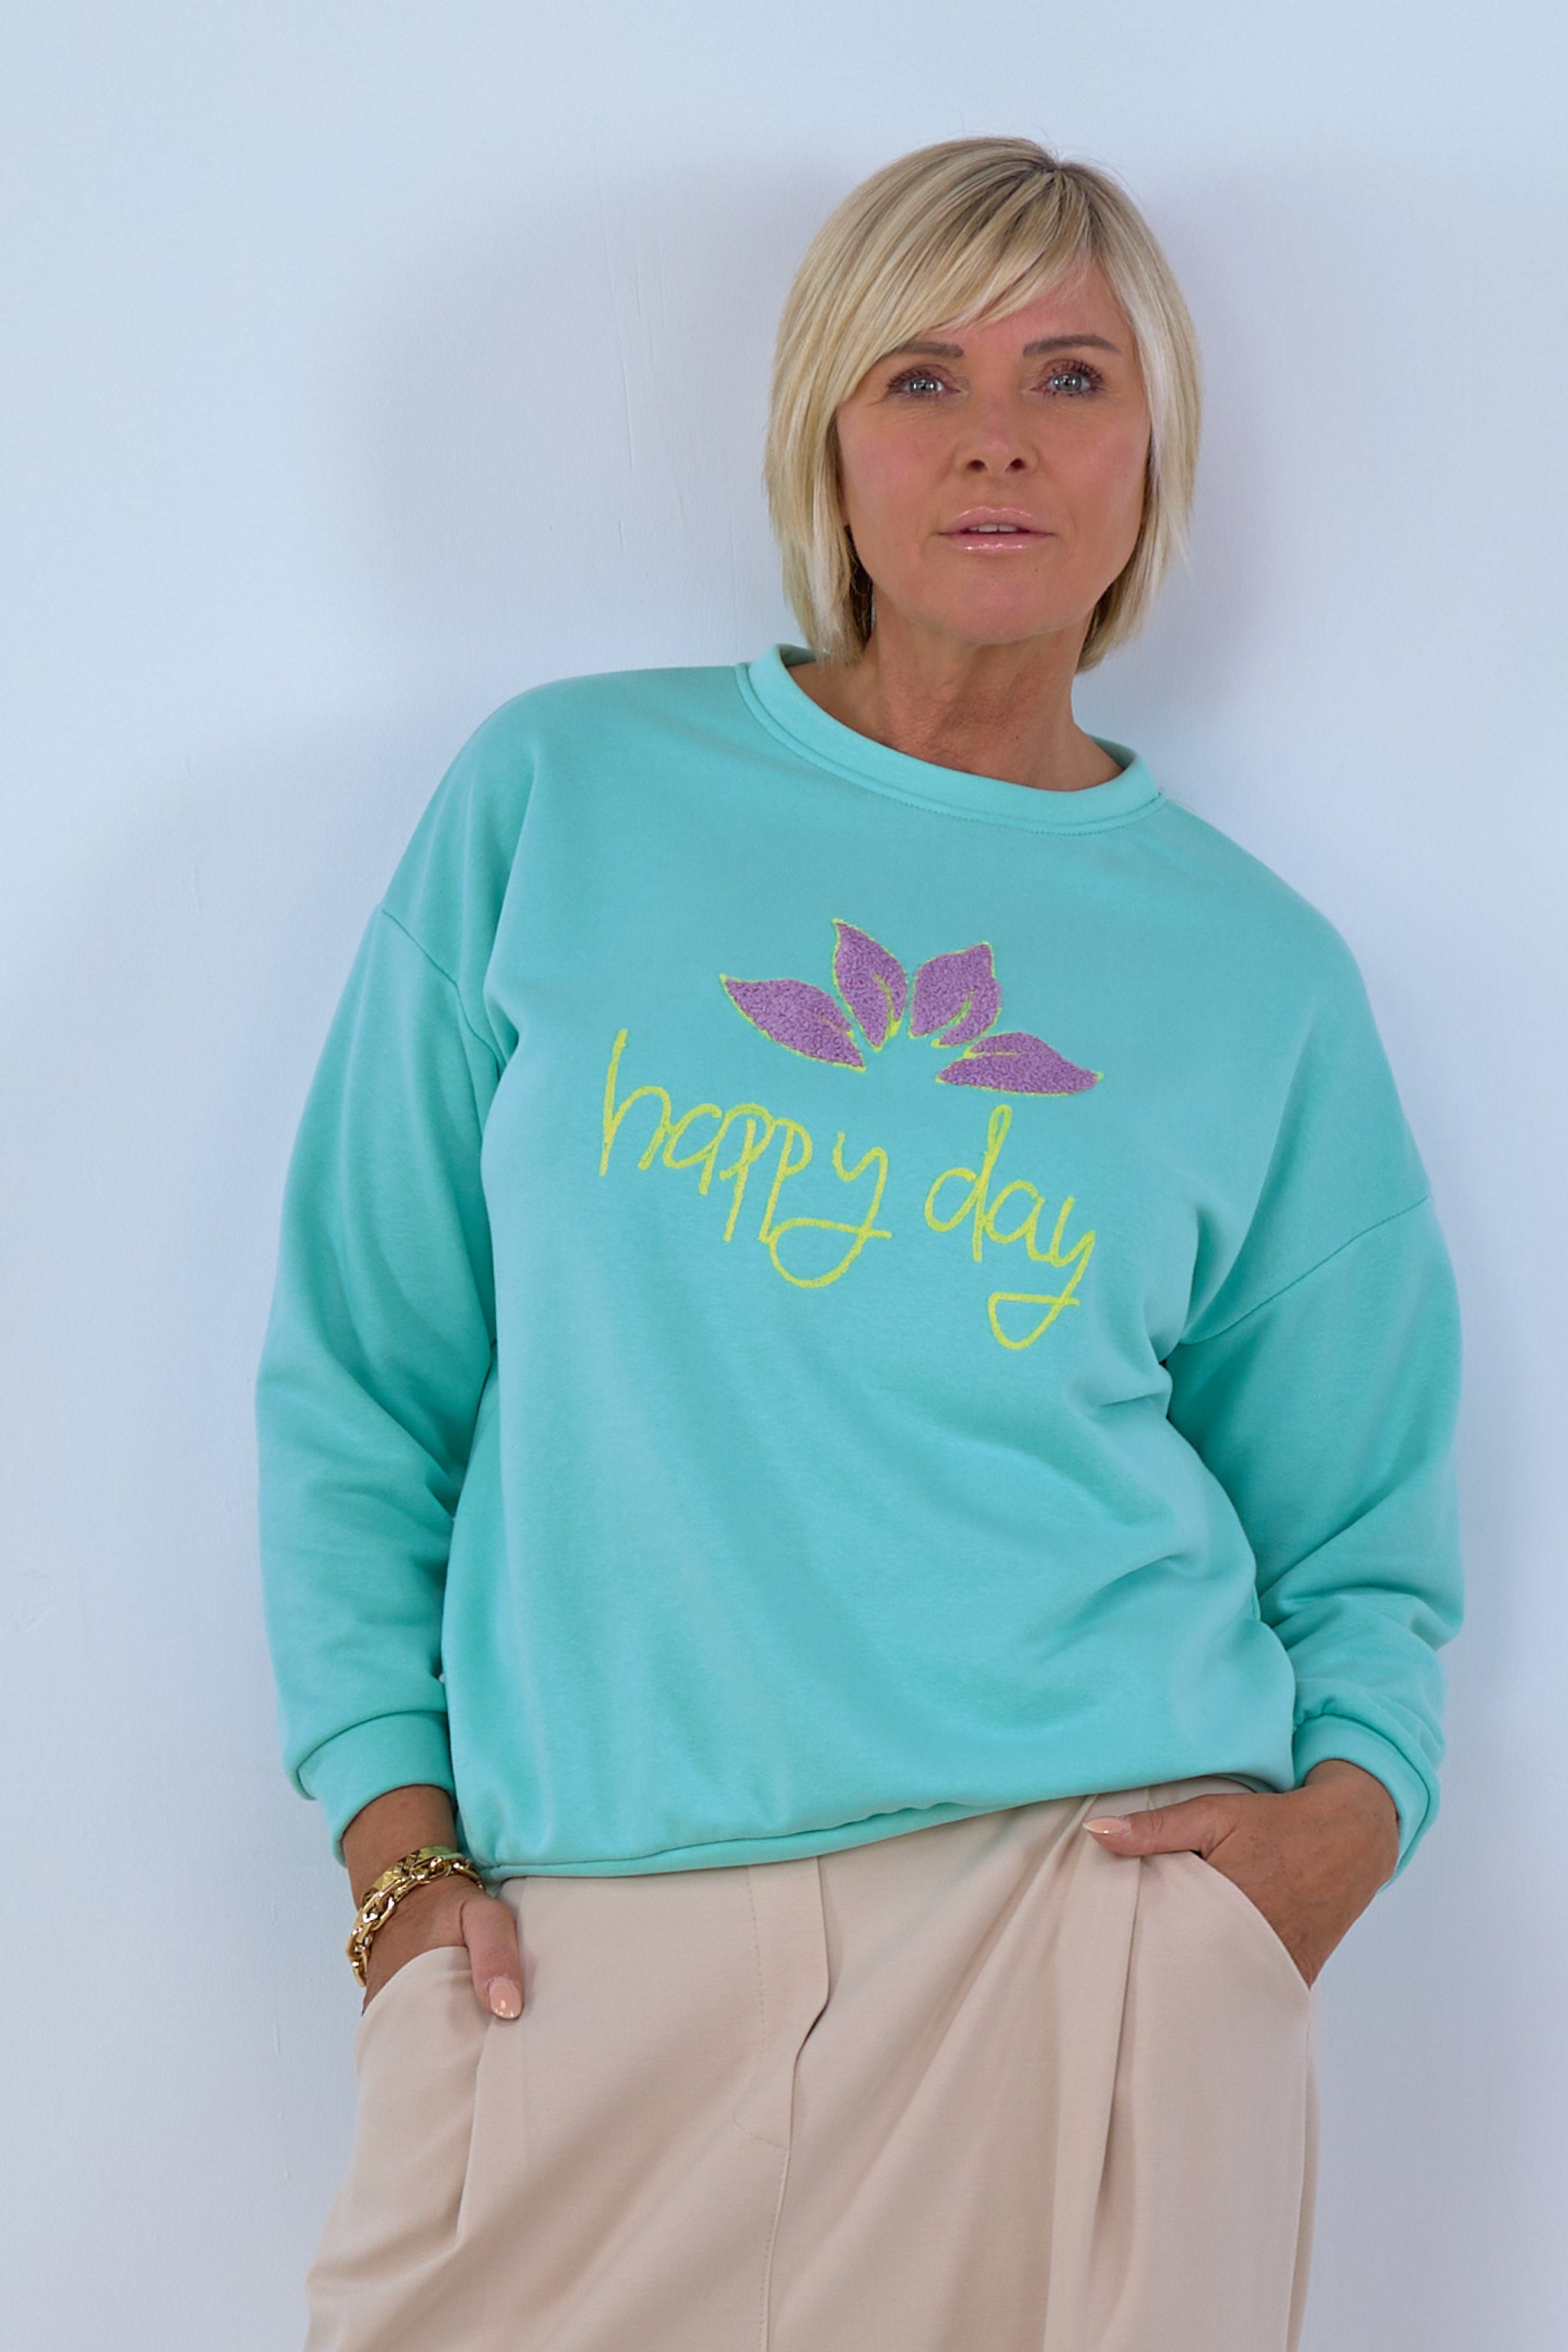 Damen Sweatshirt türkis happy day Trends & Lifestyle Deutschland GmbH